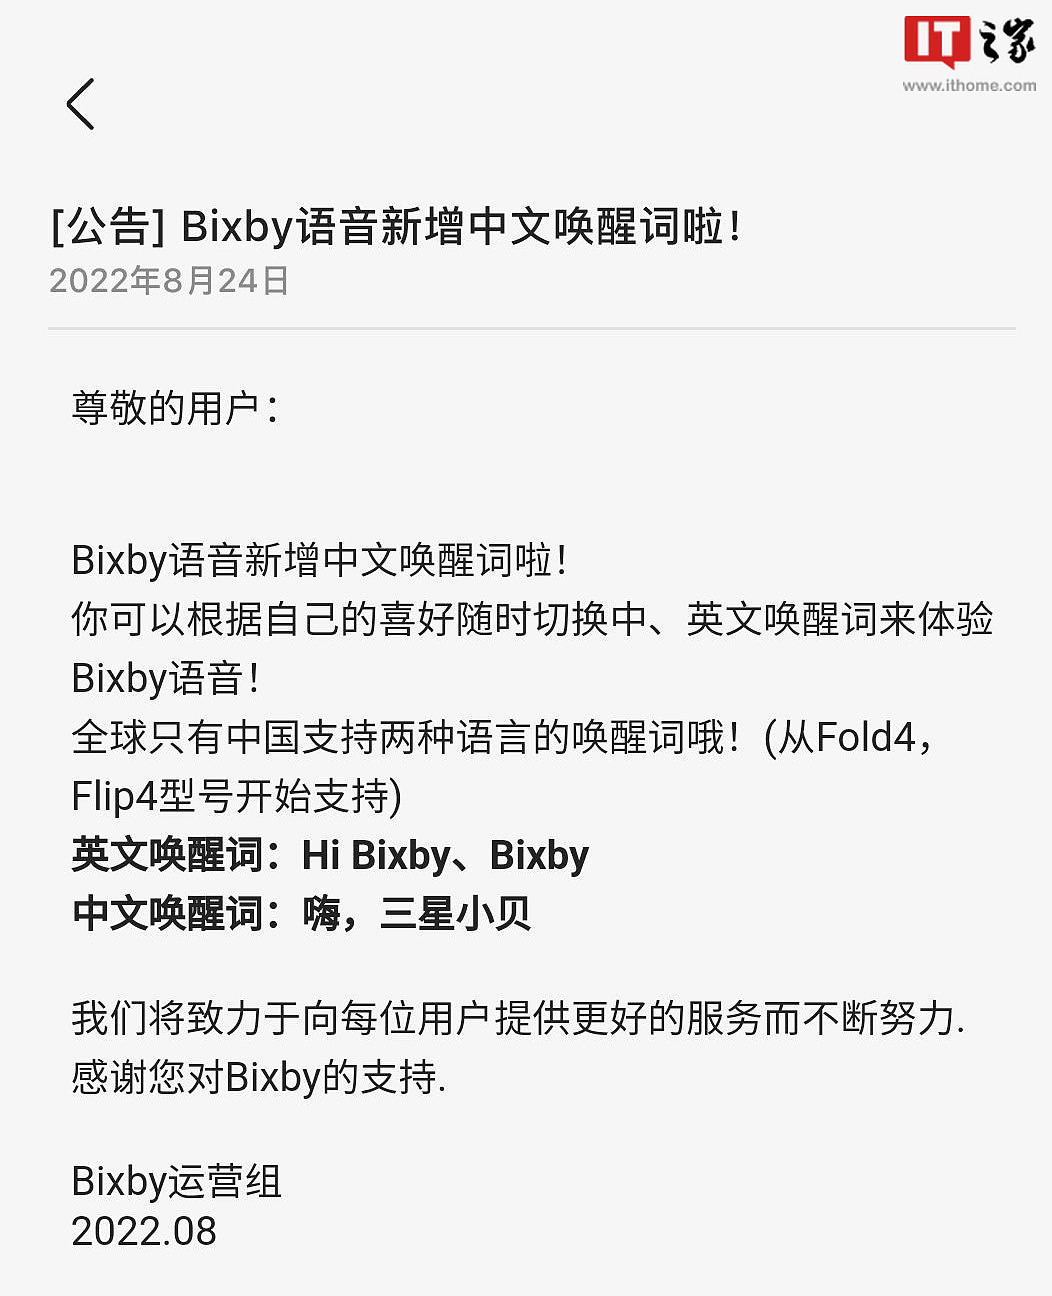 中国独享的 Moment，三星 Galaxy 手机 Bixby 语音助手推出中文唤醒词“嗨，三星小贝” - 2